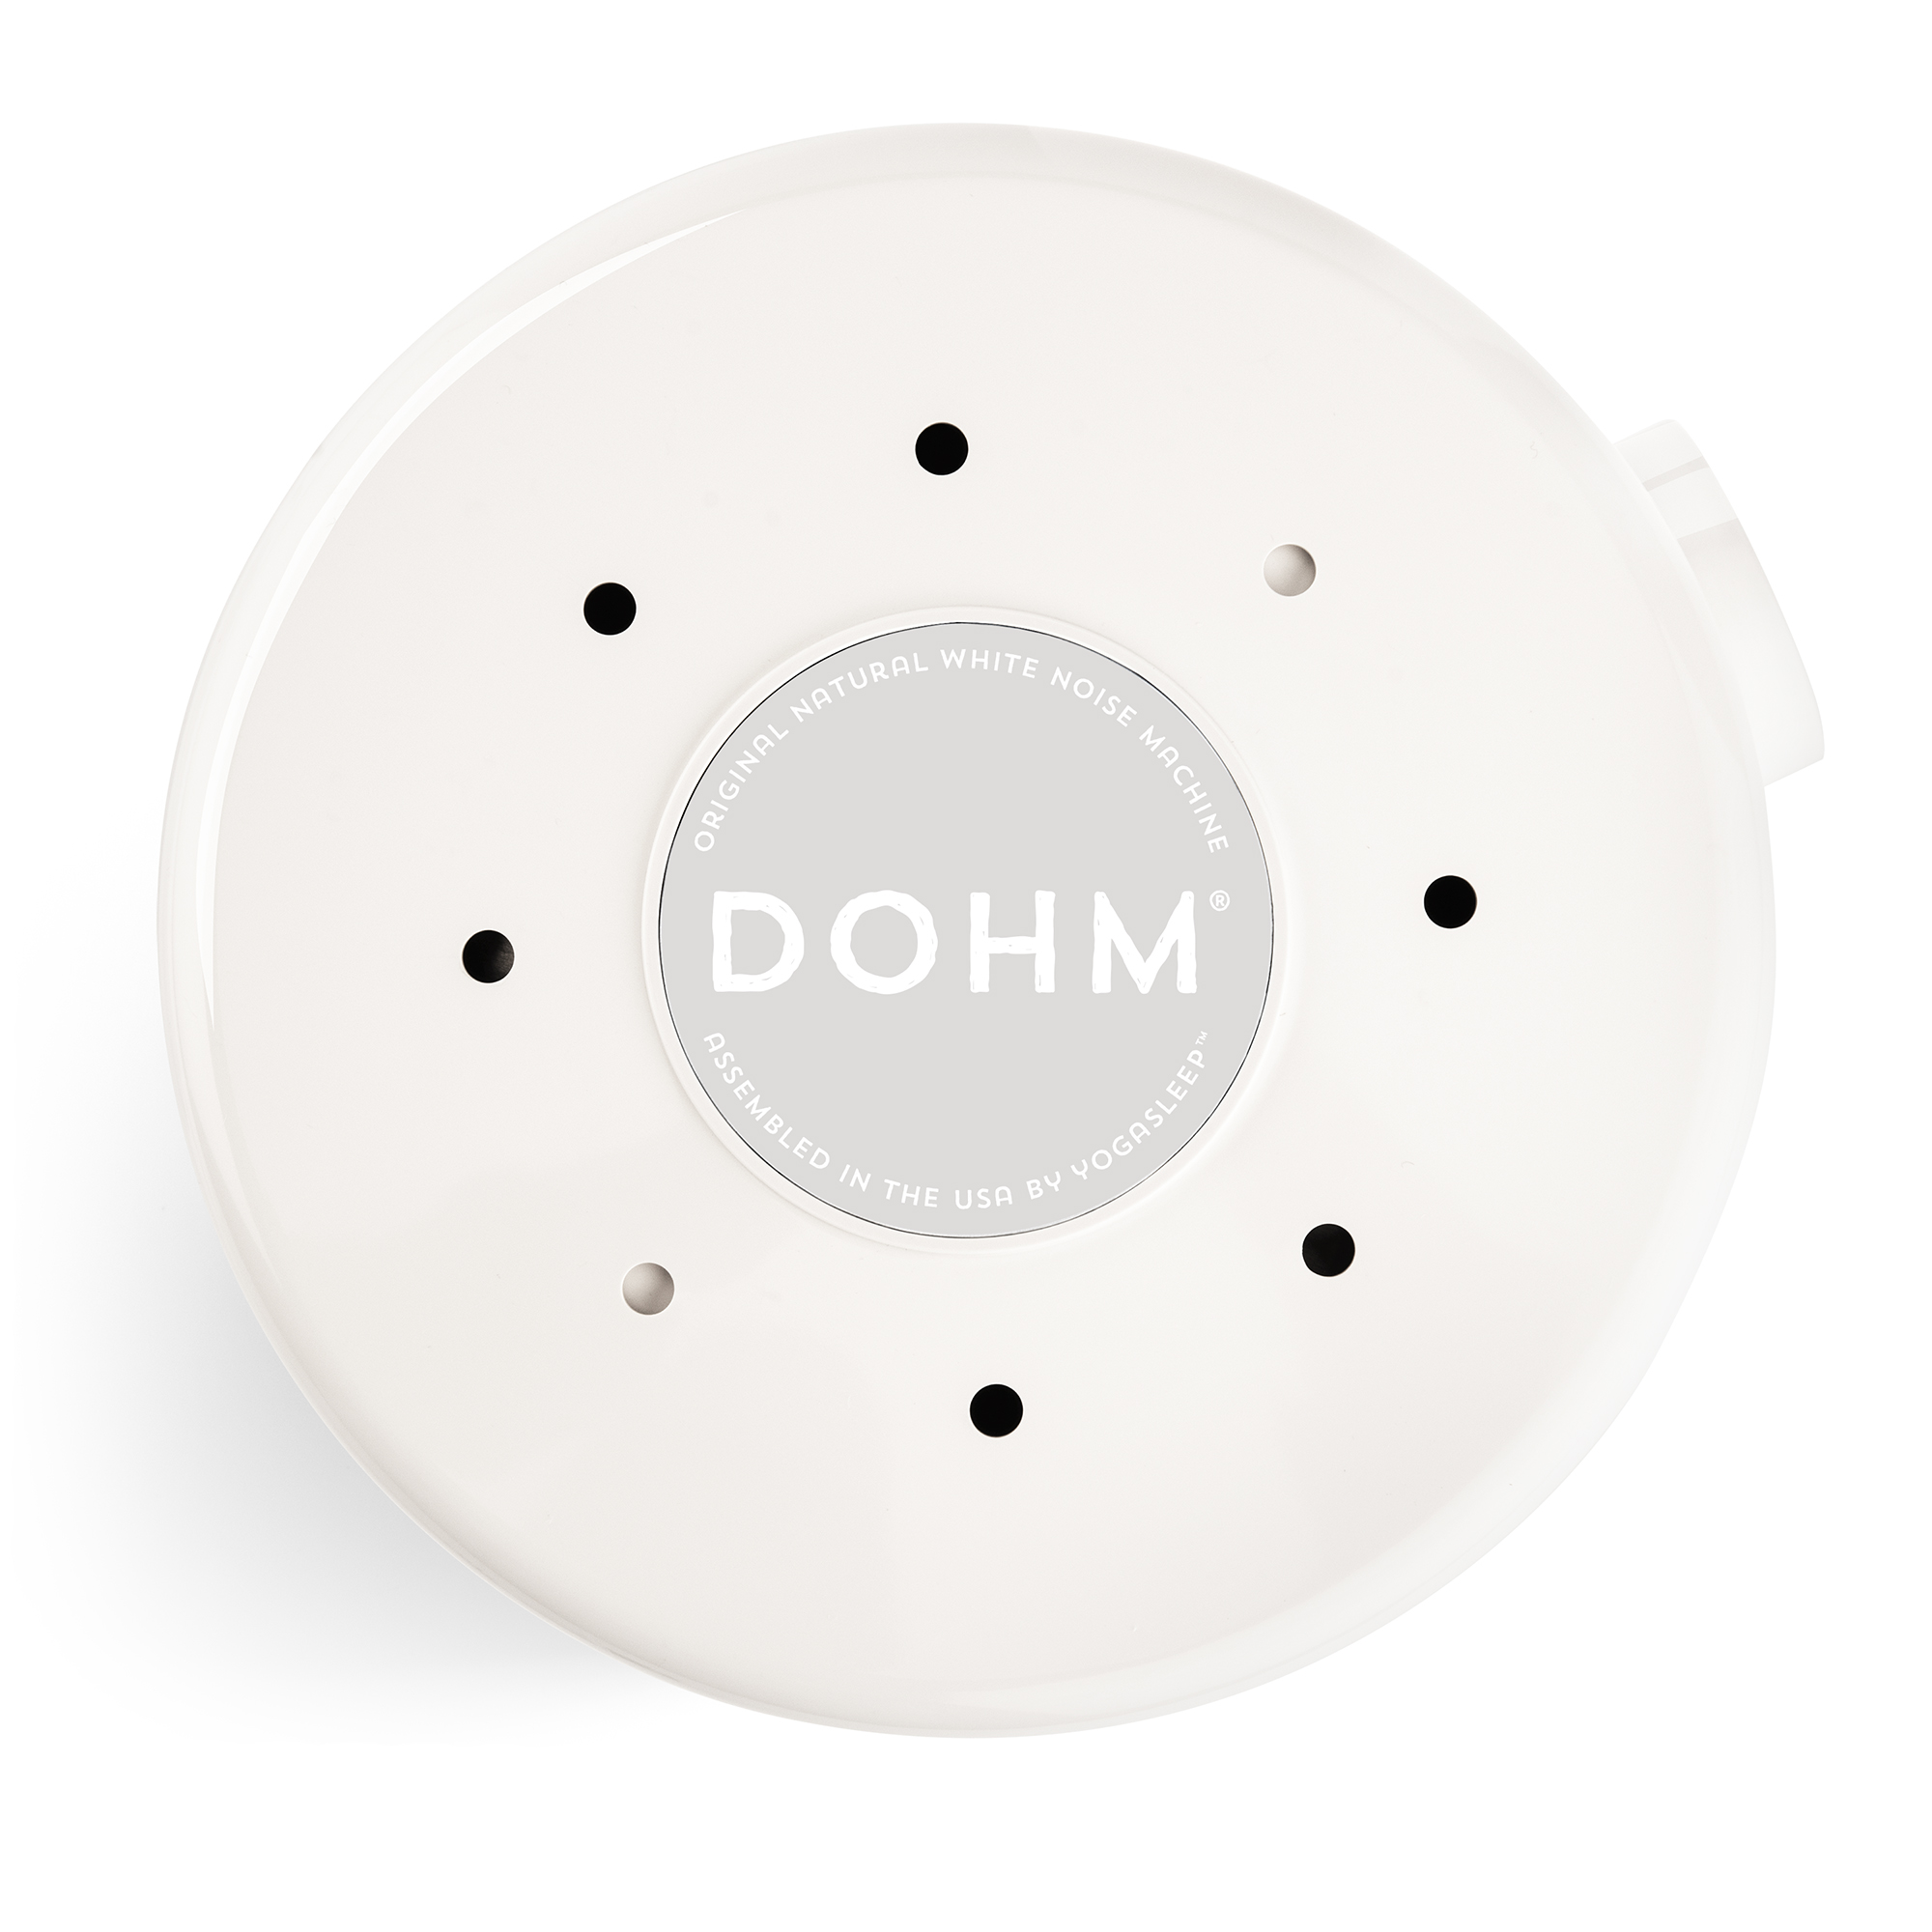 Yogasleep Dohm® Classic White Noise Sleep Sound Machine, White - image 4 of 8